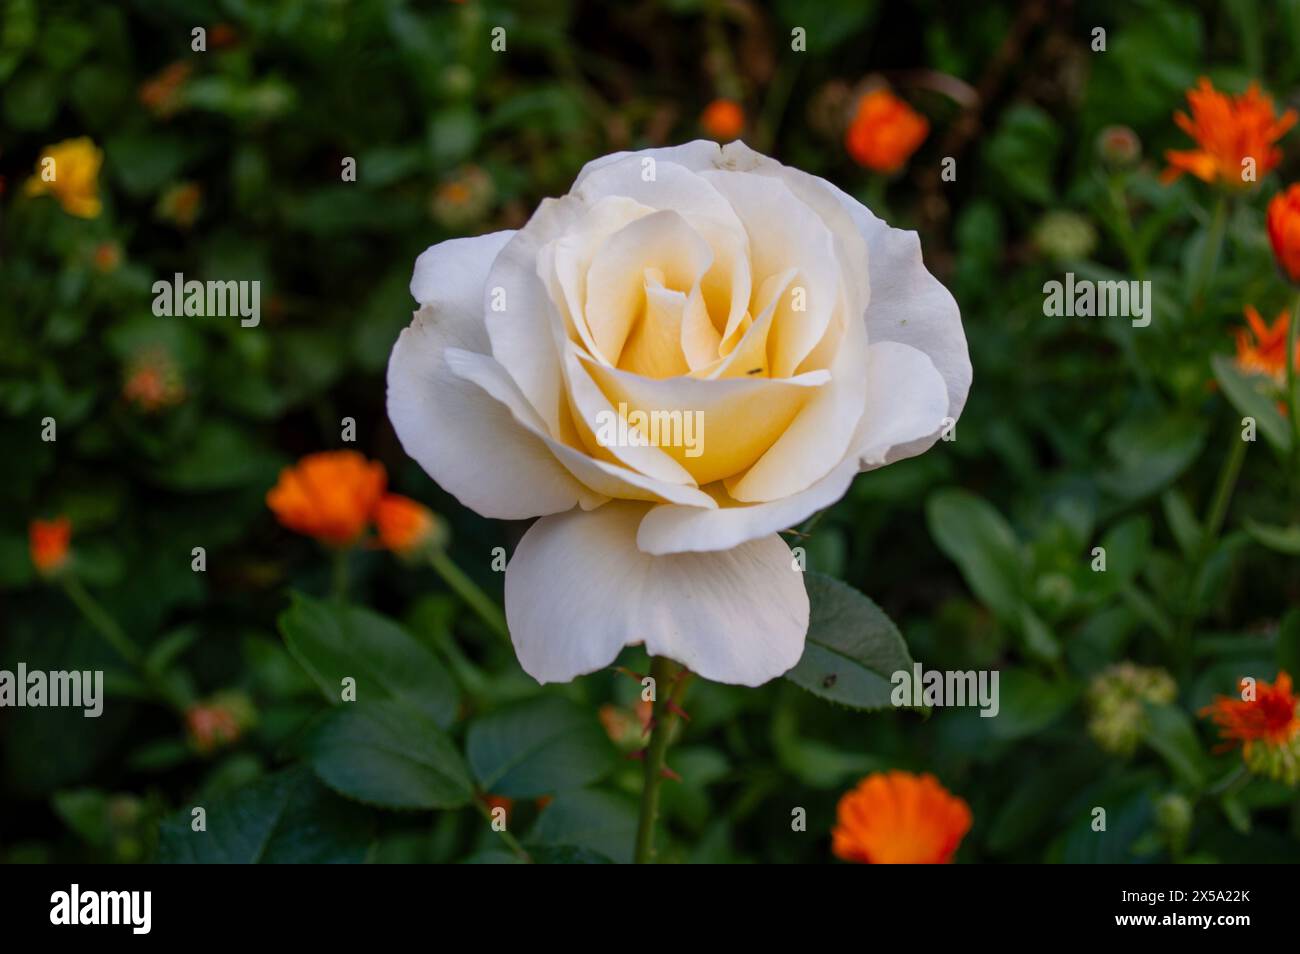 Garden flowers, white rose Stock Photo